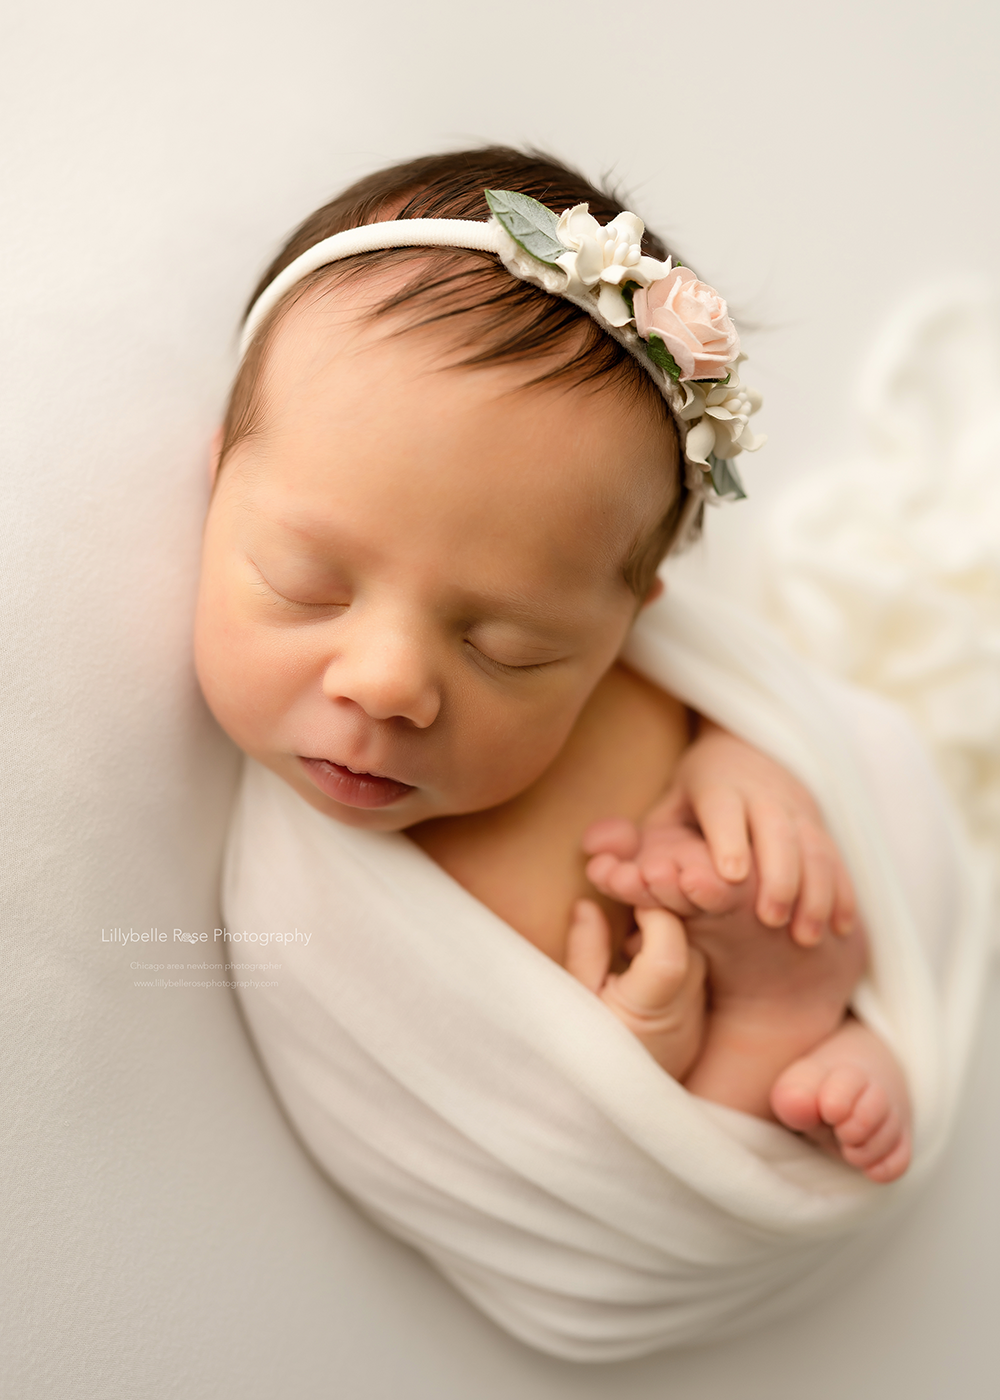 teething tips and tricks, baby photo shoot, newborn photos, chicago newborn photographer